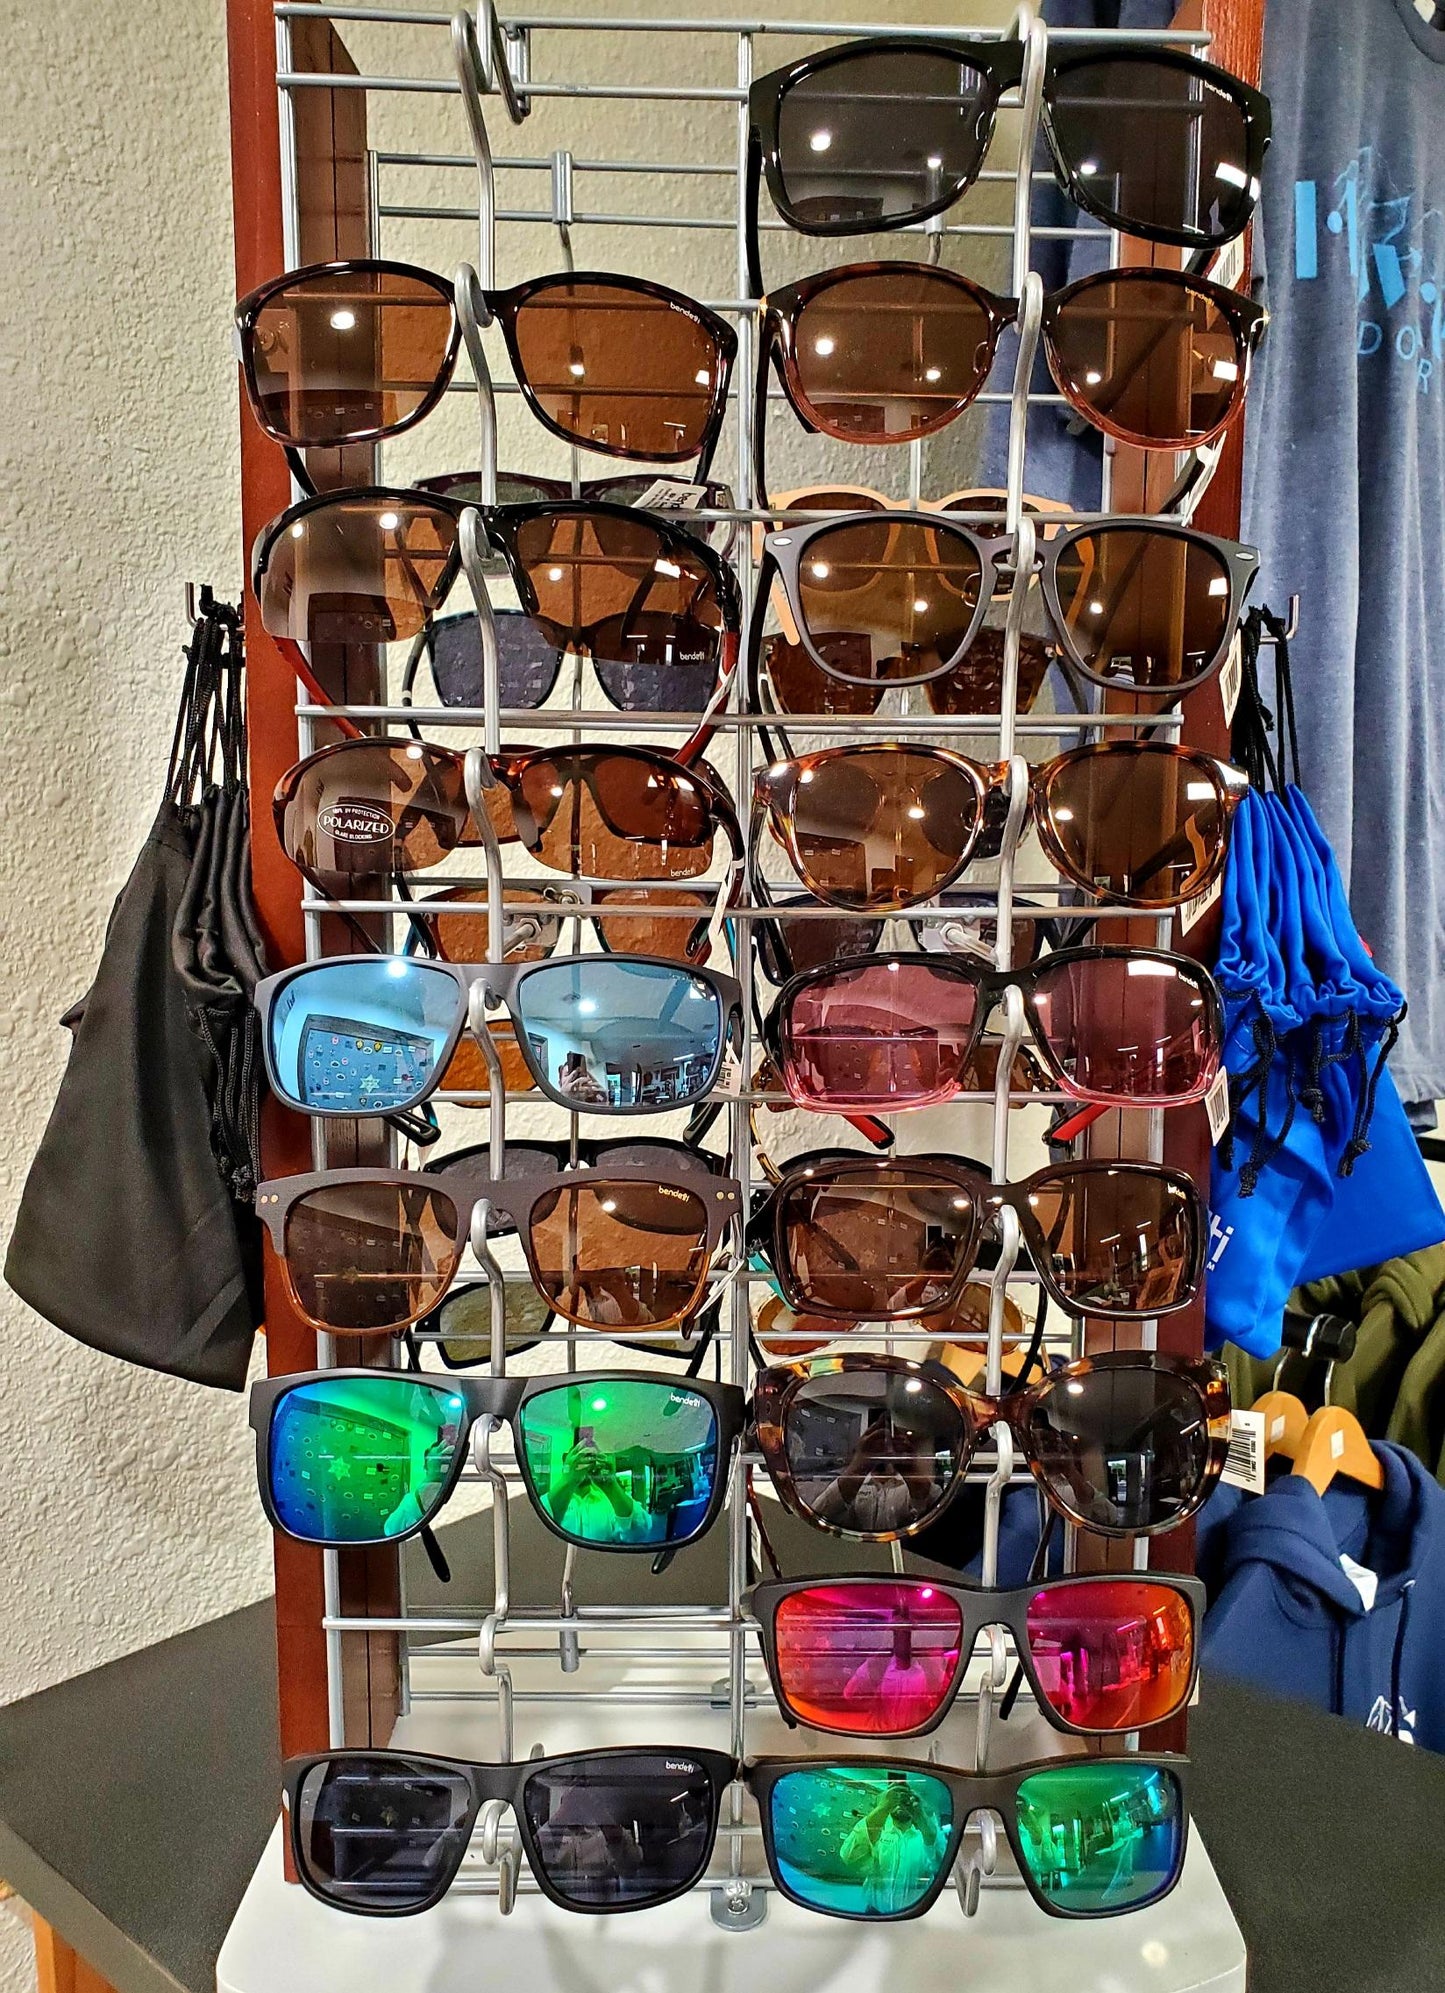 Bendetti Polarized Sunglasses